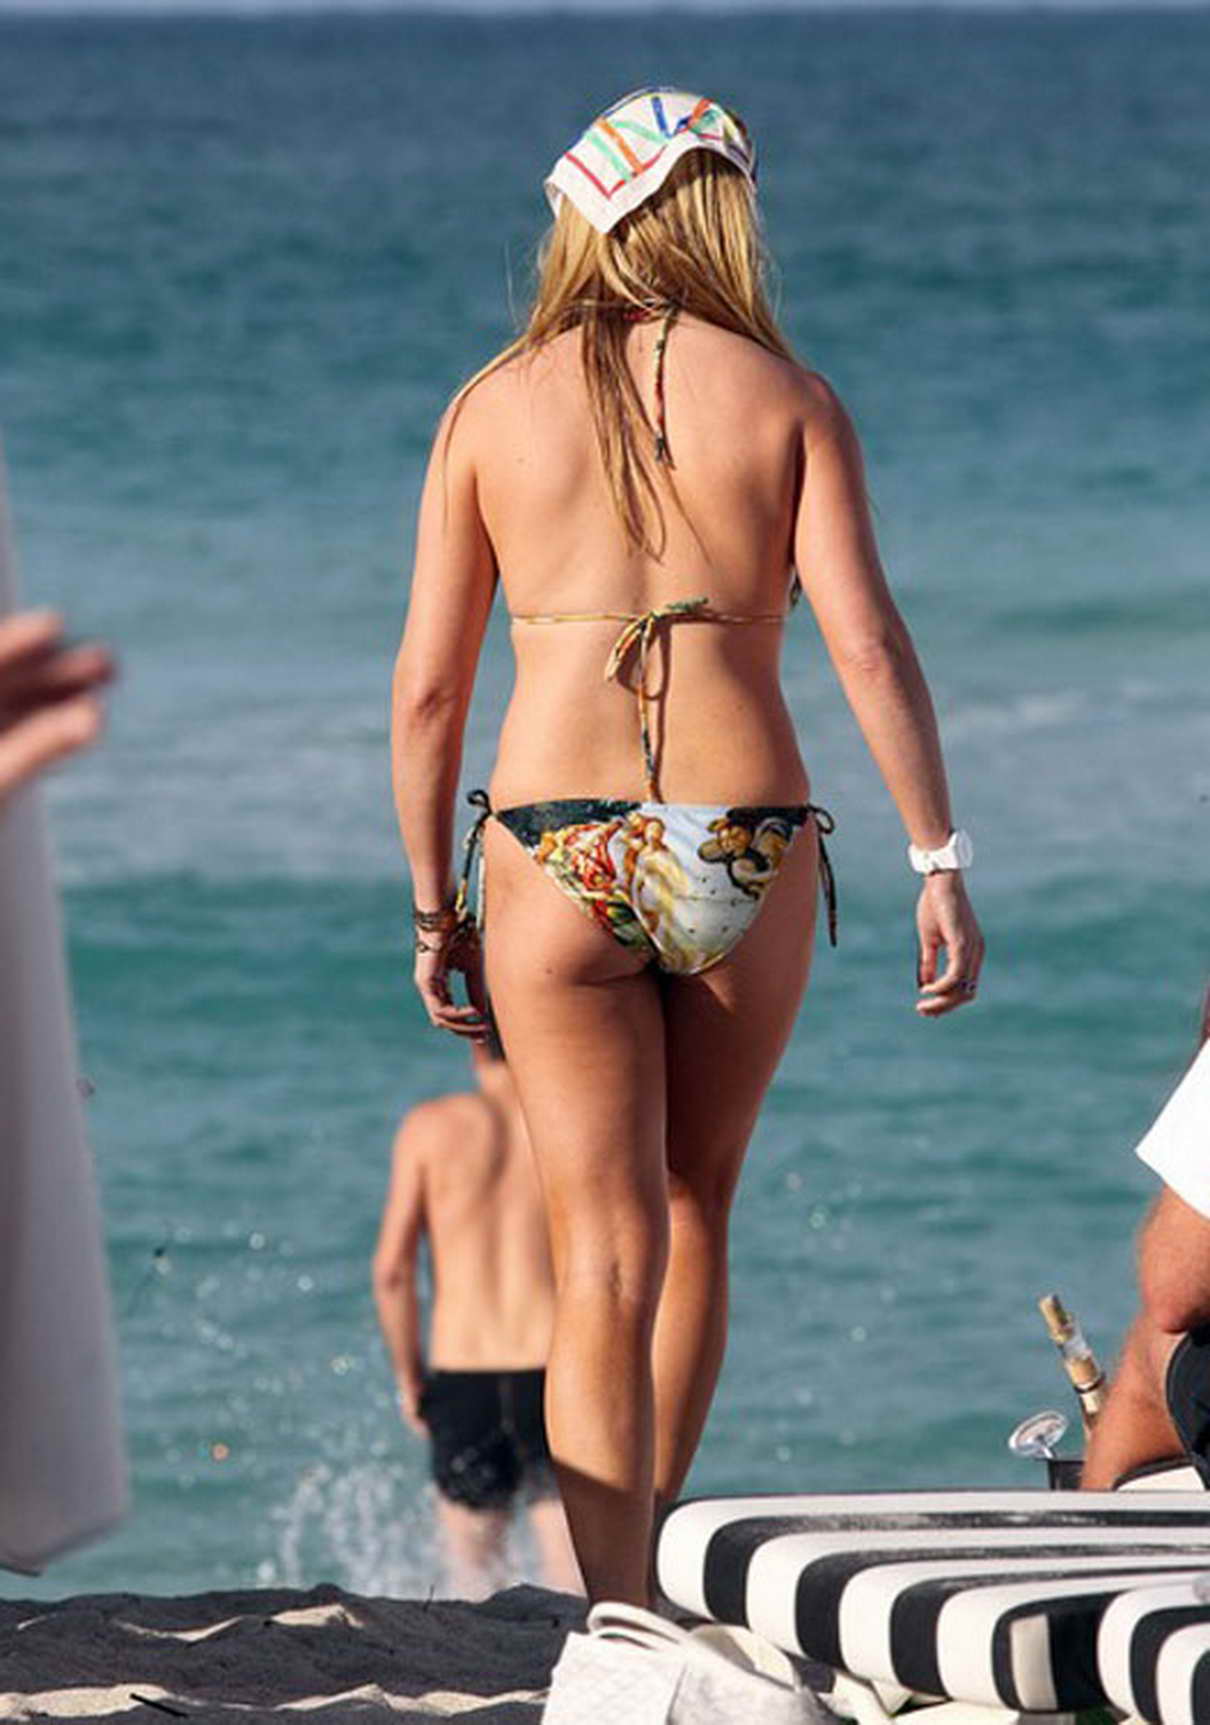 Jill Martin In A Stunning Bikini On Beach In Miami Lacelebs Co